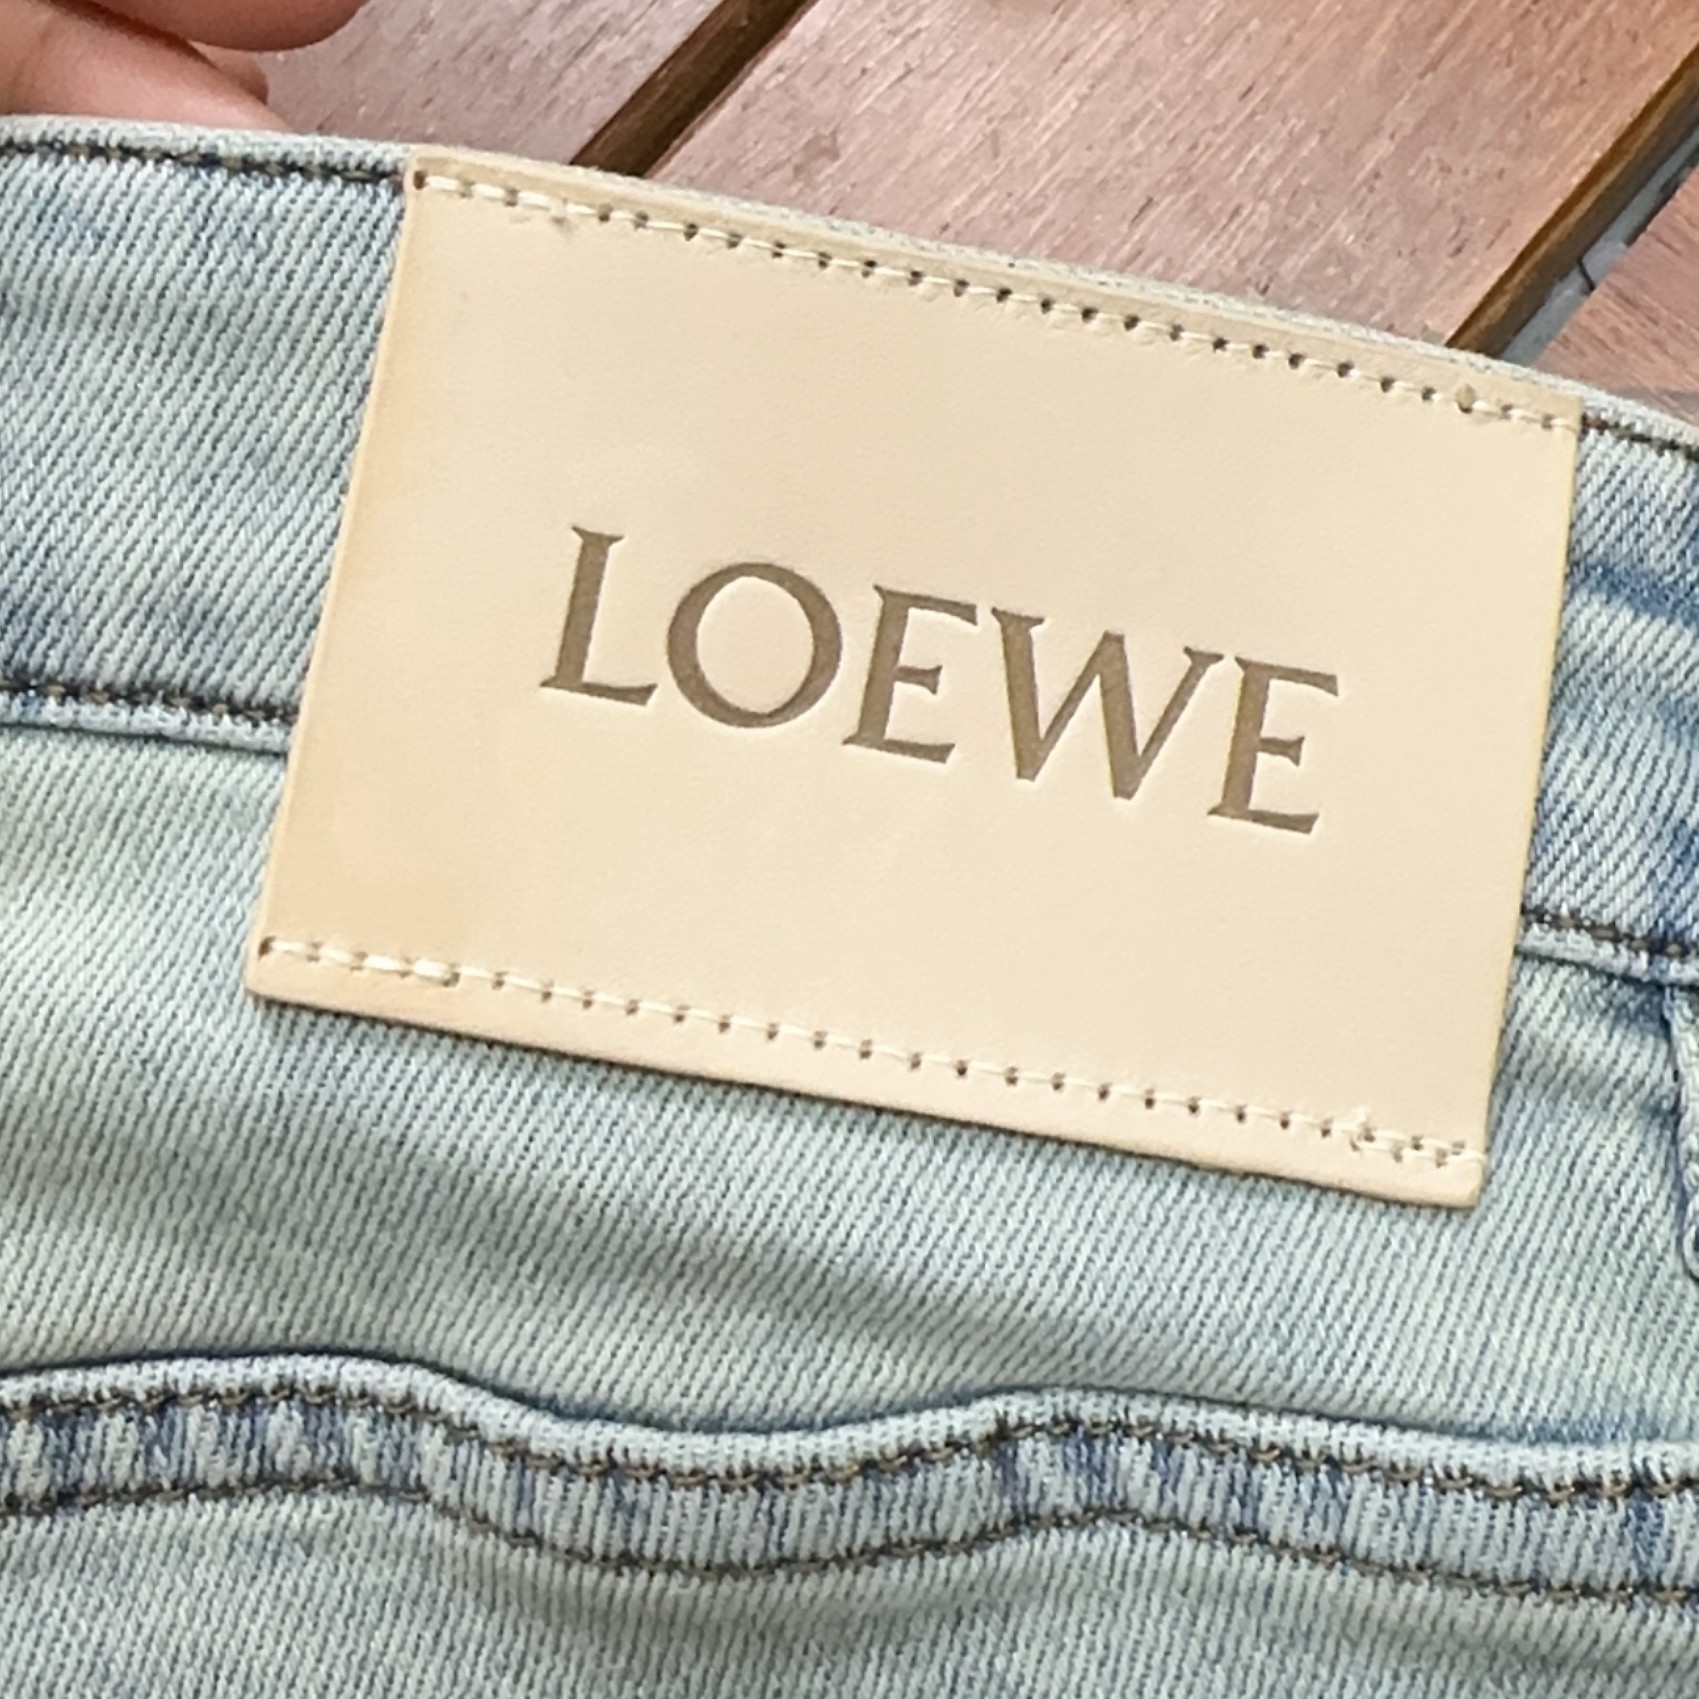 Loewe罗意威新款新品专柜有售实体店极品牛仔裤专柜原版1:1好货适合各个年龄段市场最高版本的欧洲进口面